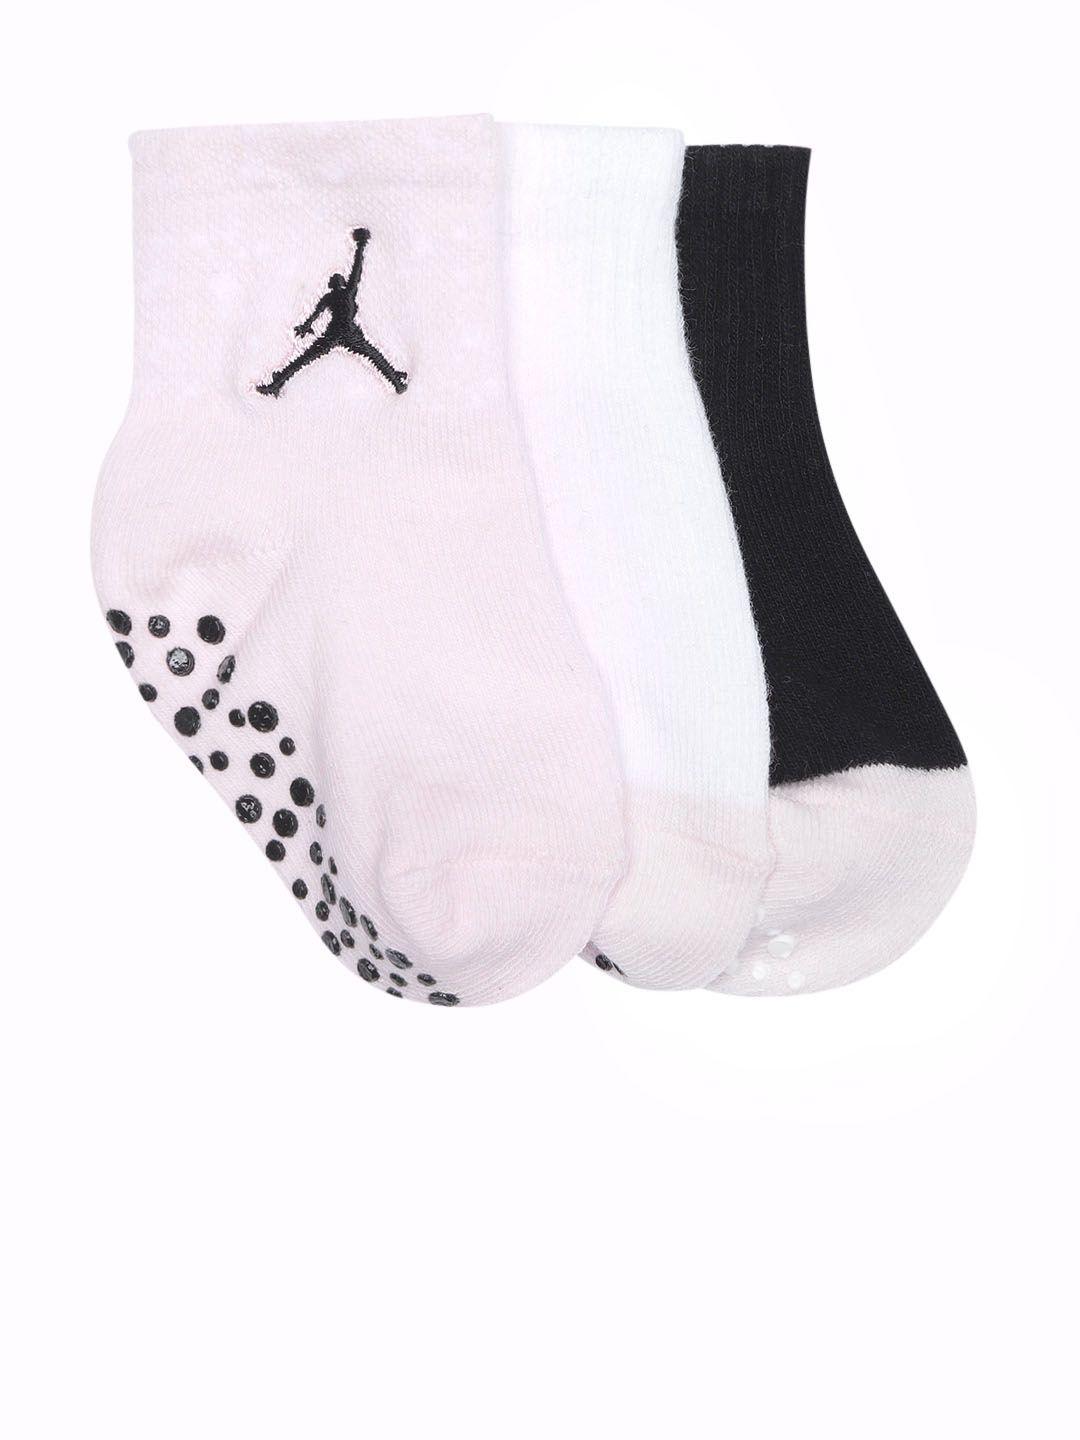 Jordan Unisex Kids Assorted Pack of 3 Quarter Socks